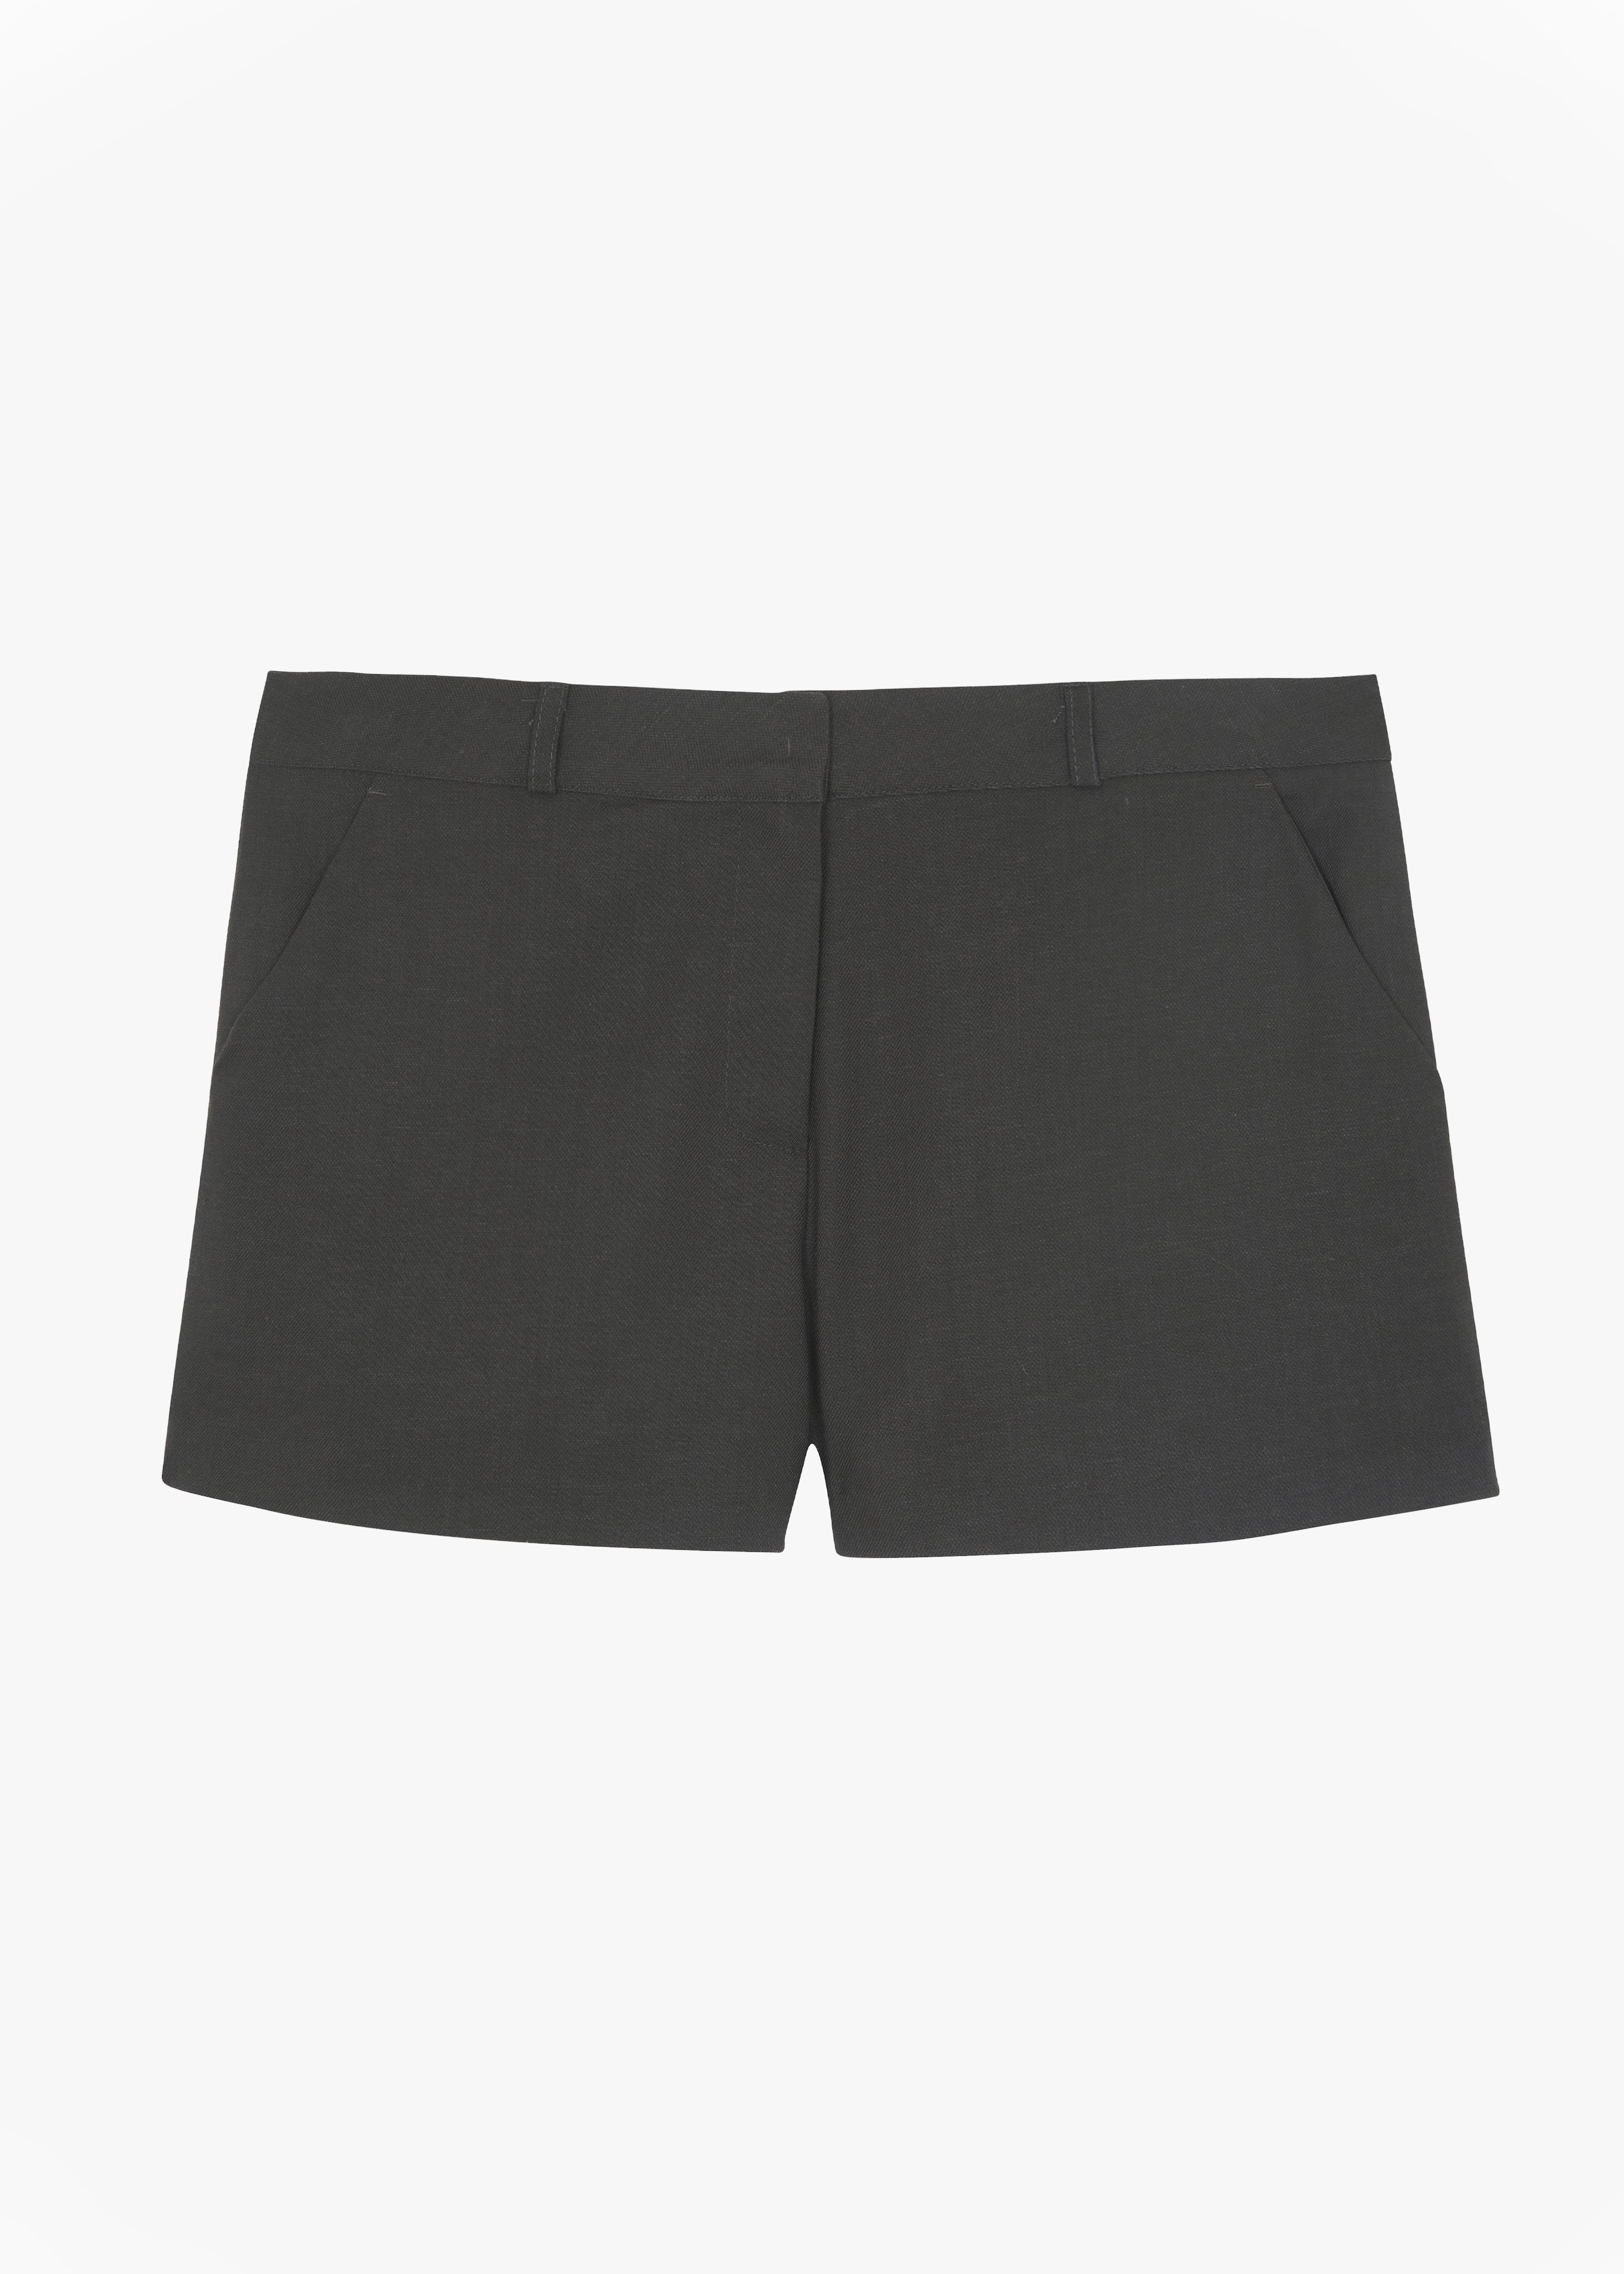 Palma Shorts - Charcoal - 10